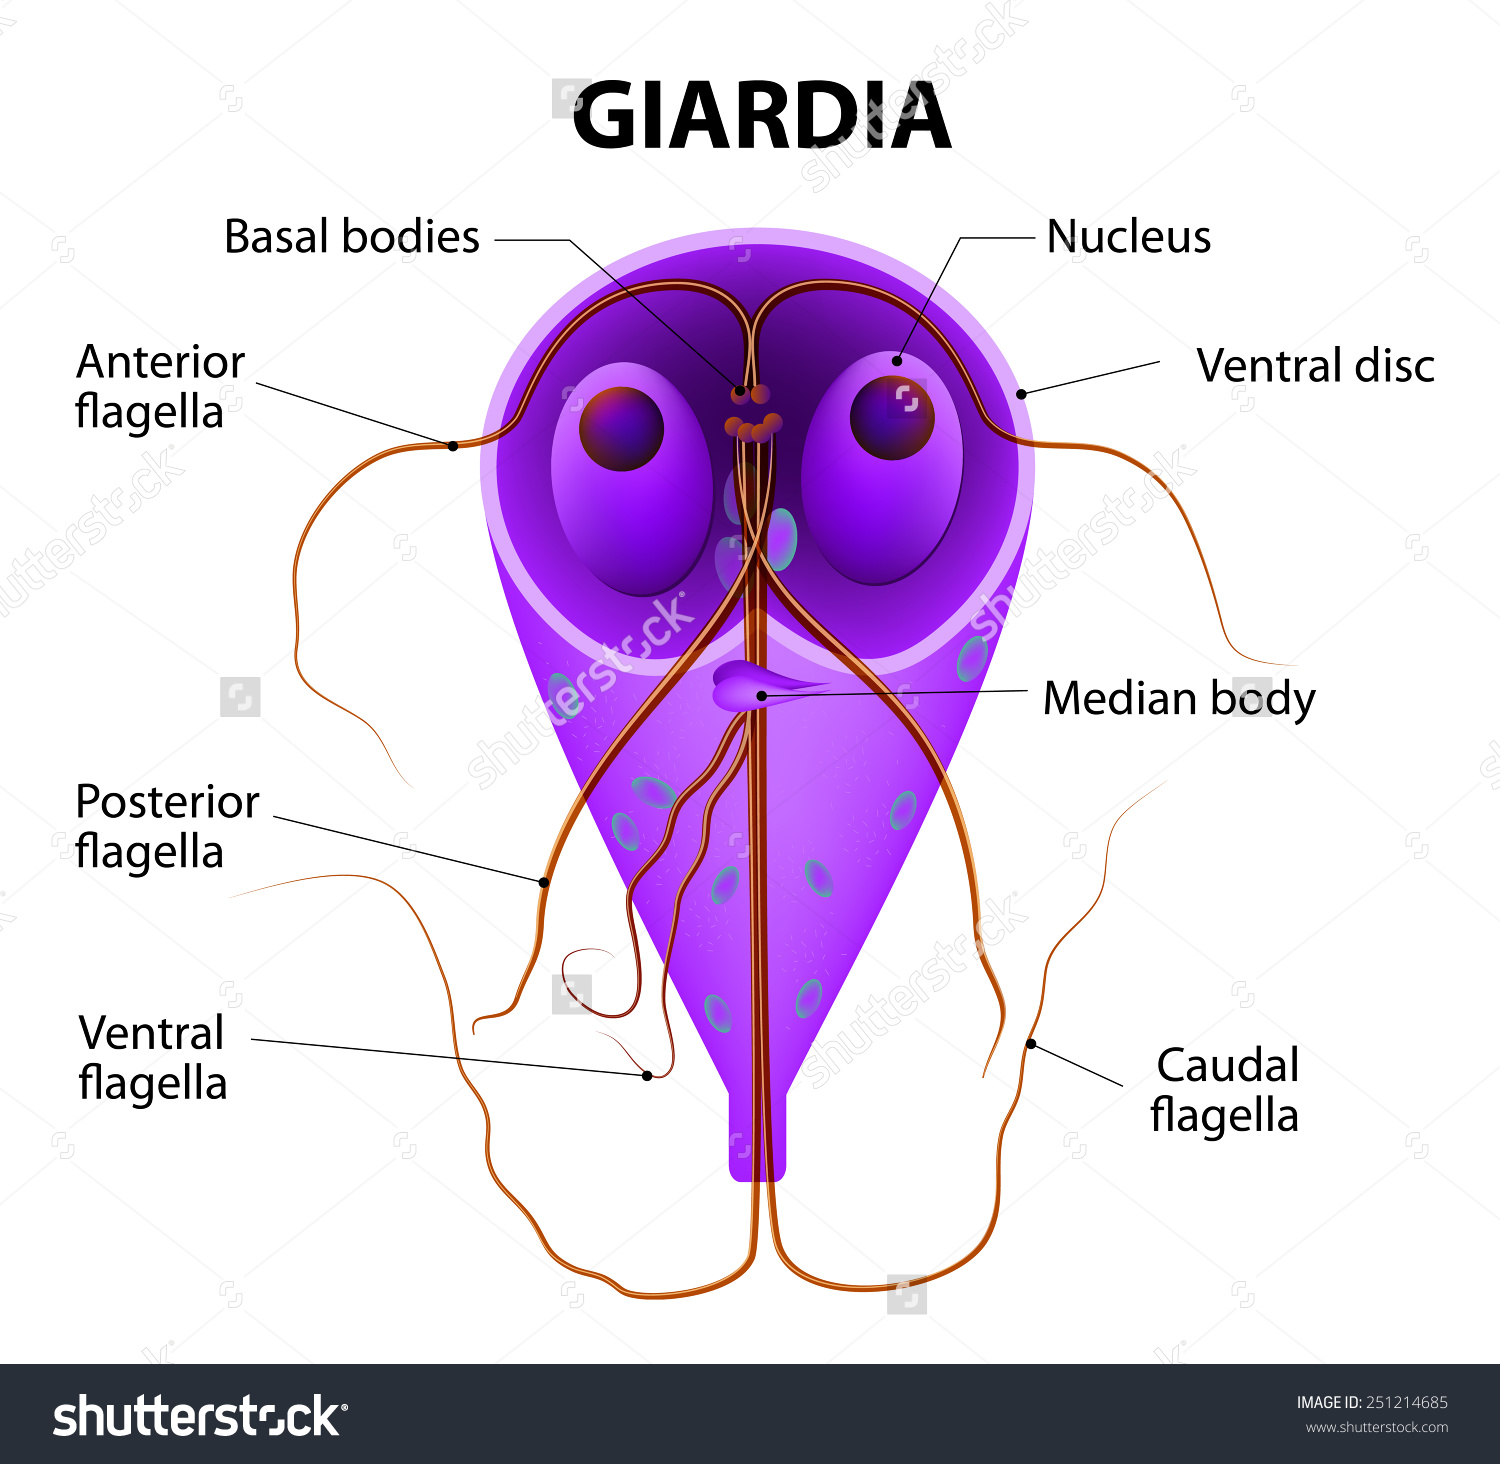 Magnézium a giardiasis értékeléséhez, Napjaink „divatos” betegségei - Laktózintolerancia